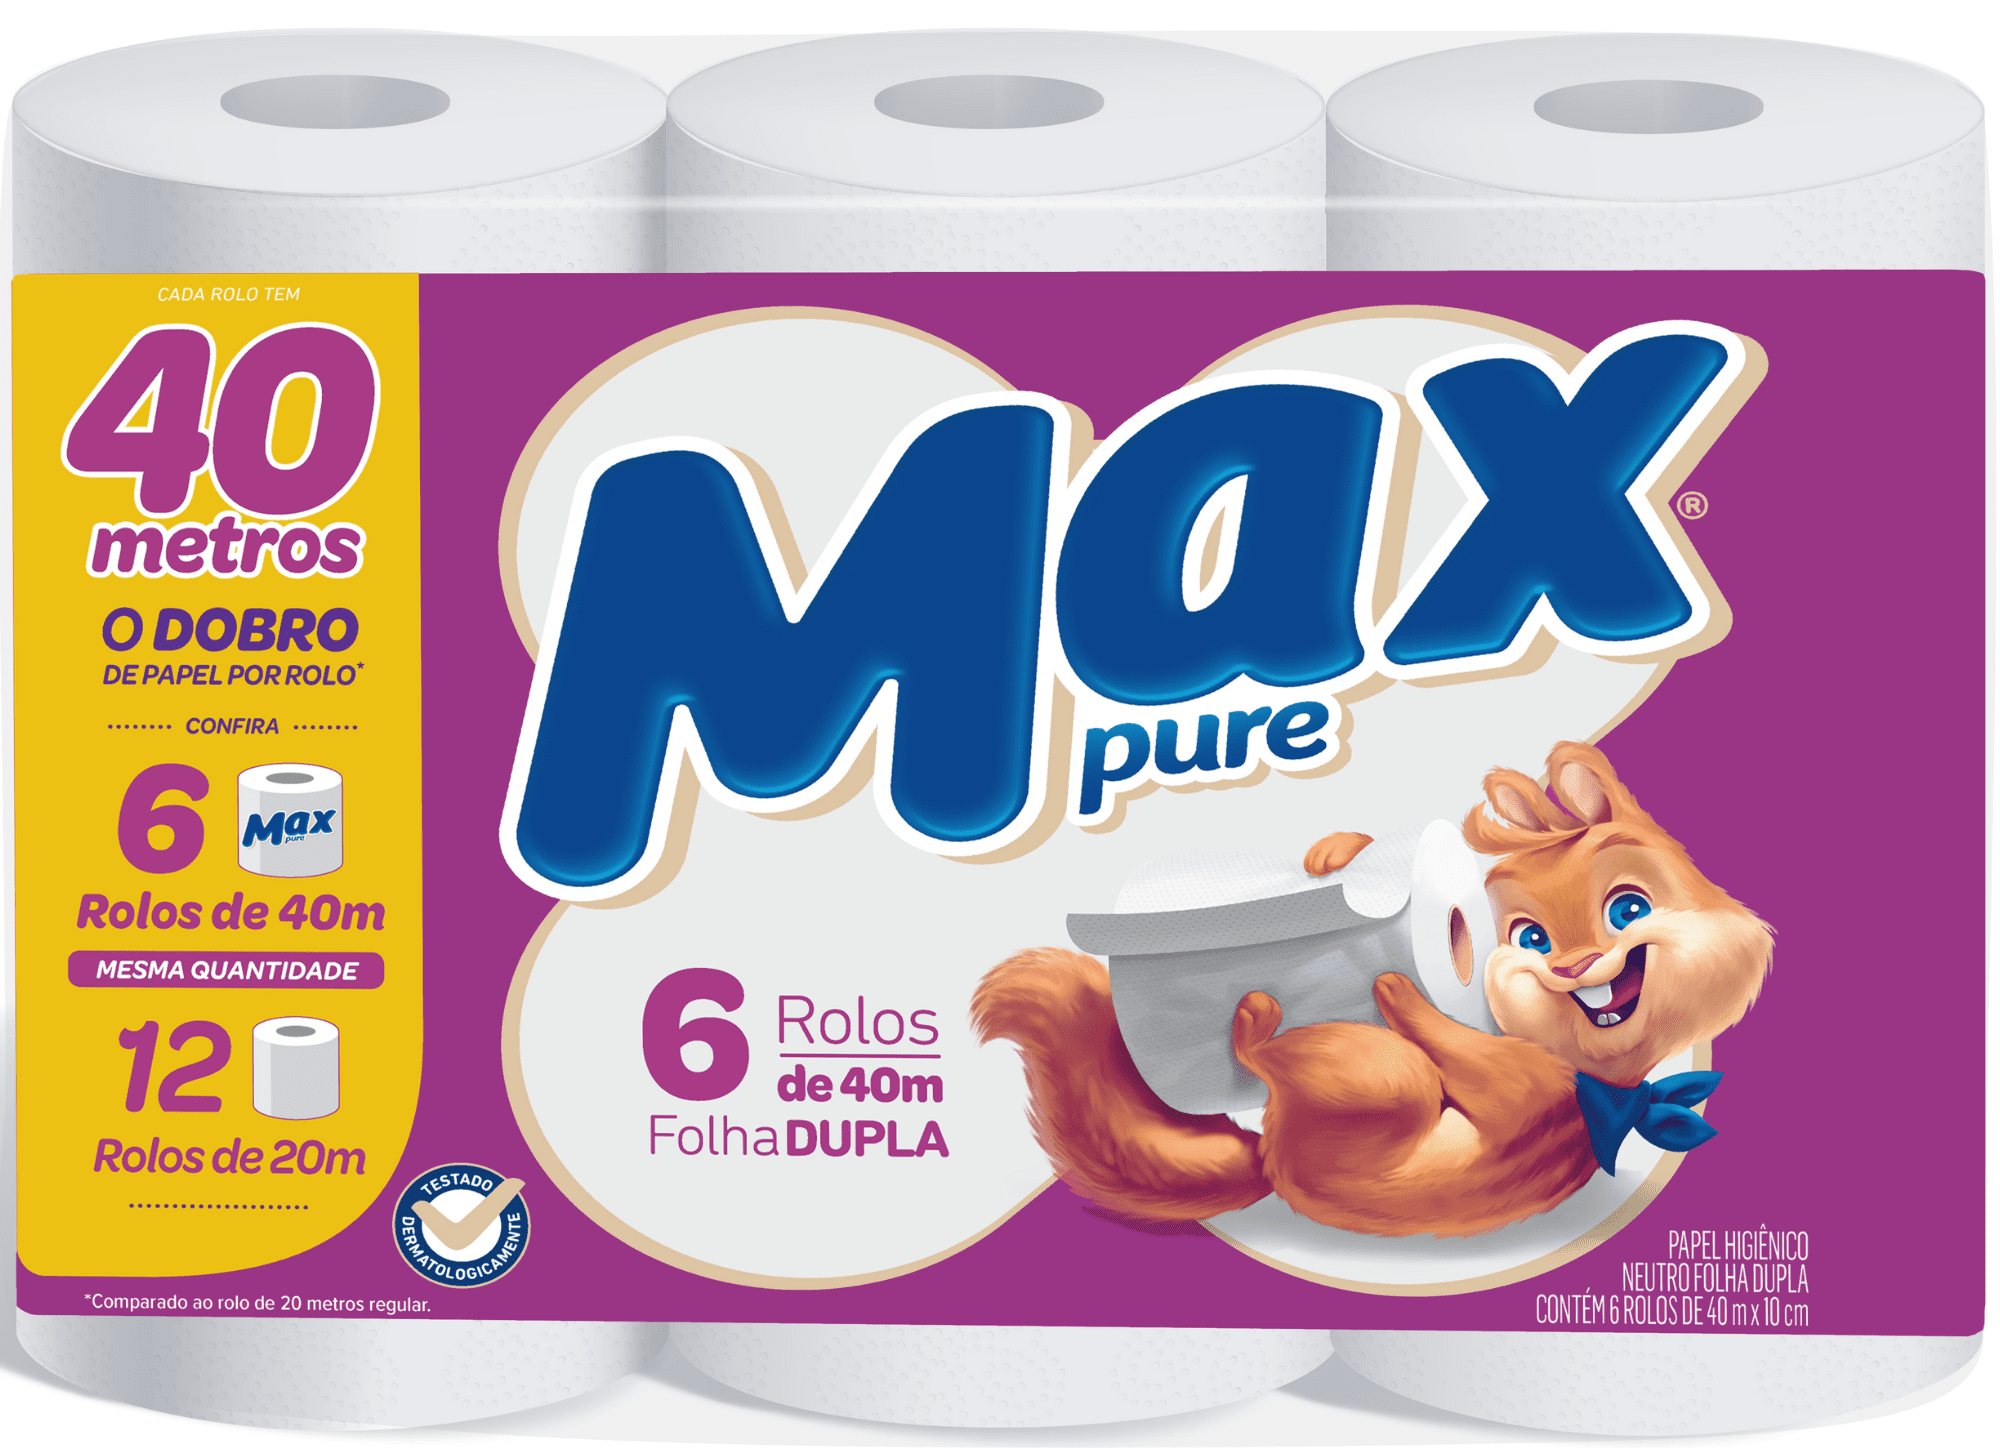 Featured image for “Suzano apresenta extensão da linha de papel higiênico das marcas Mimmo e Max Pure ”